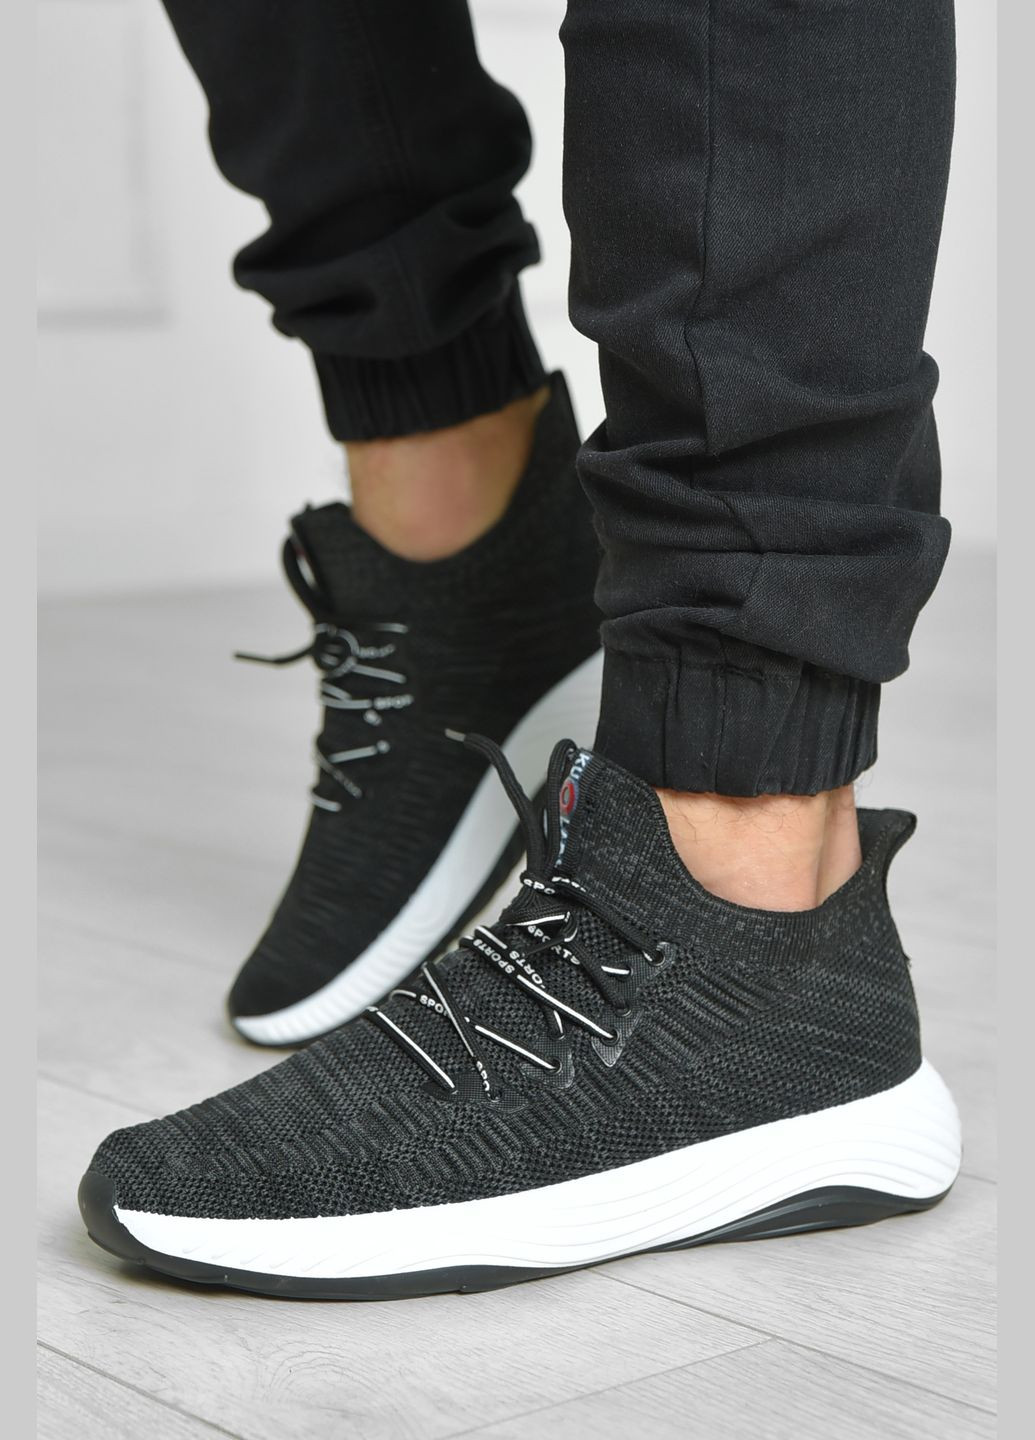 Чорні Осінні кросівки чоловічі чорного кольору текстиль Let's Shop